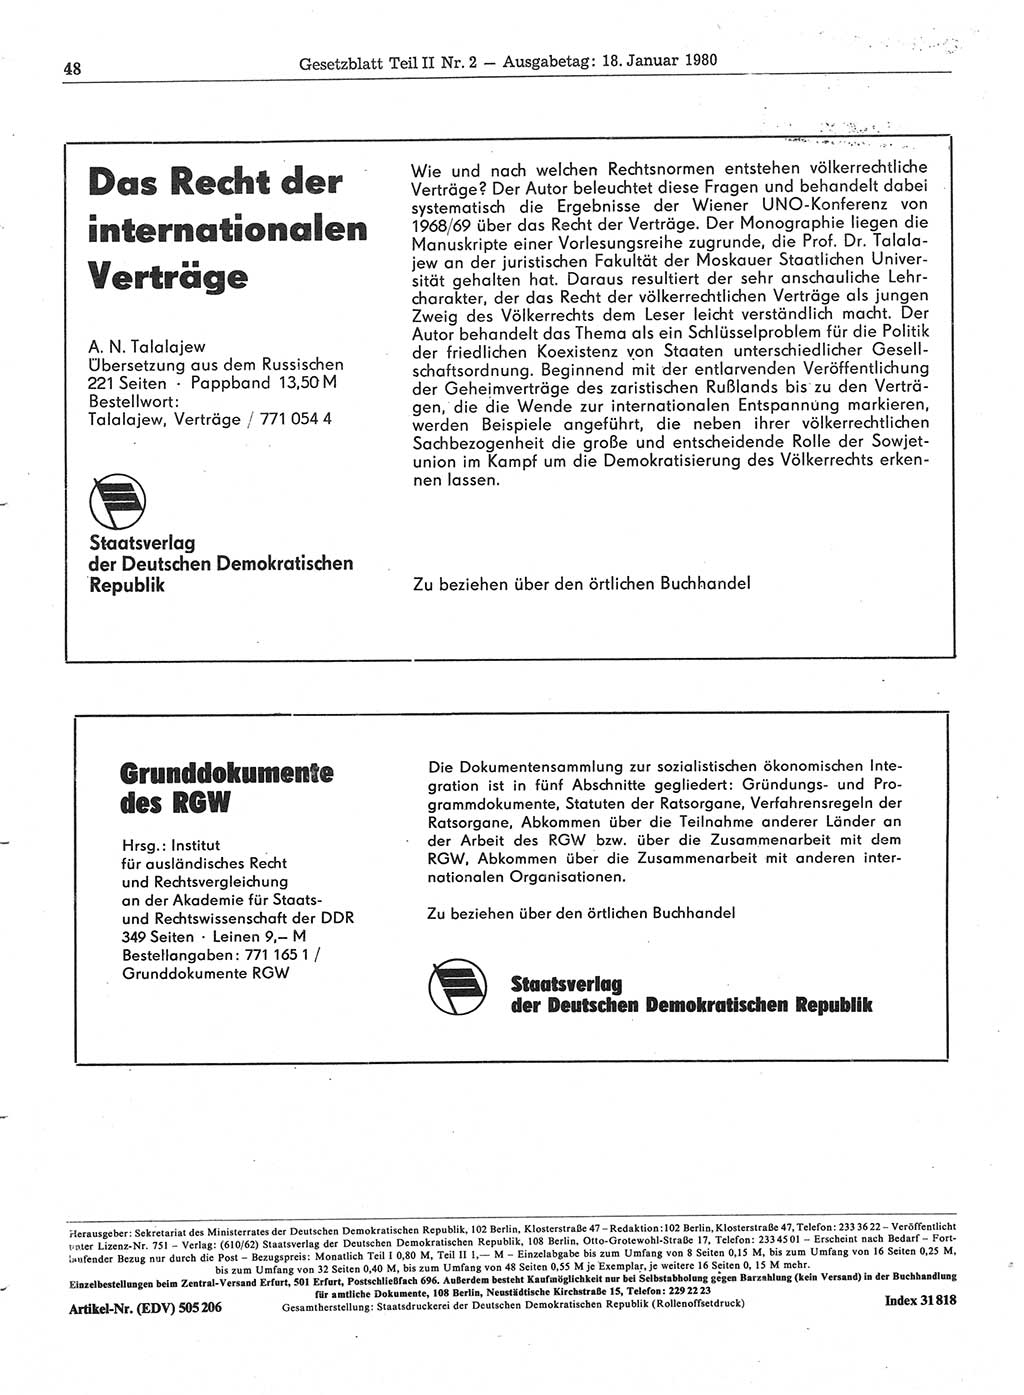 Gesetzblatt (GBl.) der Deutschen Demokratischen Republik (DDR) Teil ⅠⅠ 1980, Seite 48 (GBl. DDR ⅠⅠ 1980, S. 48)